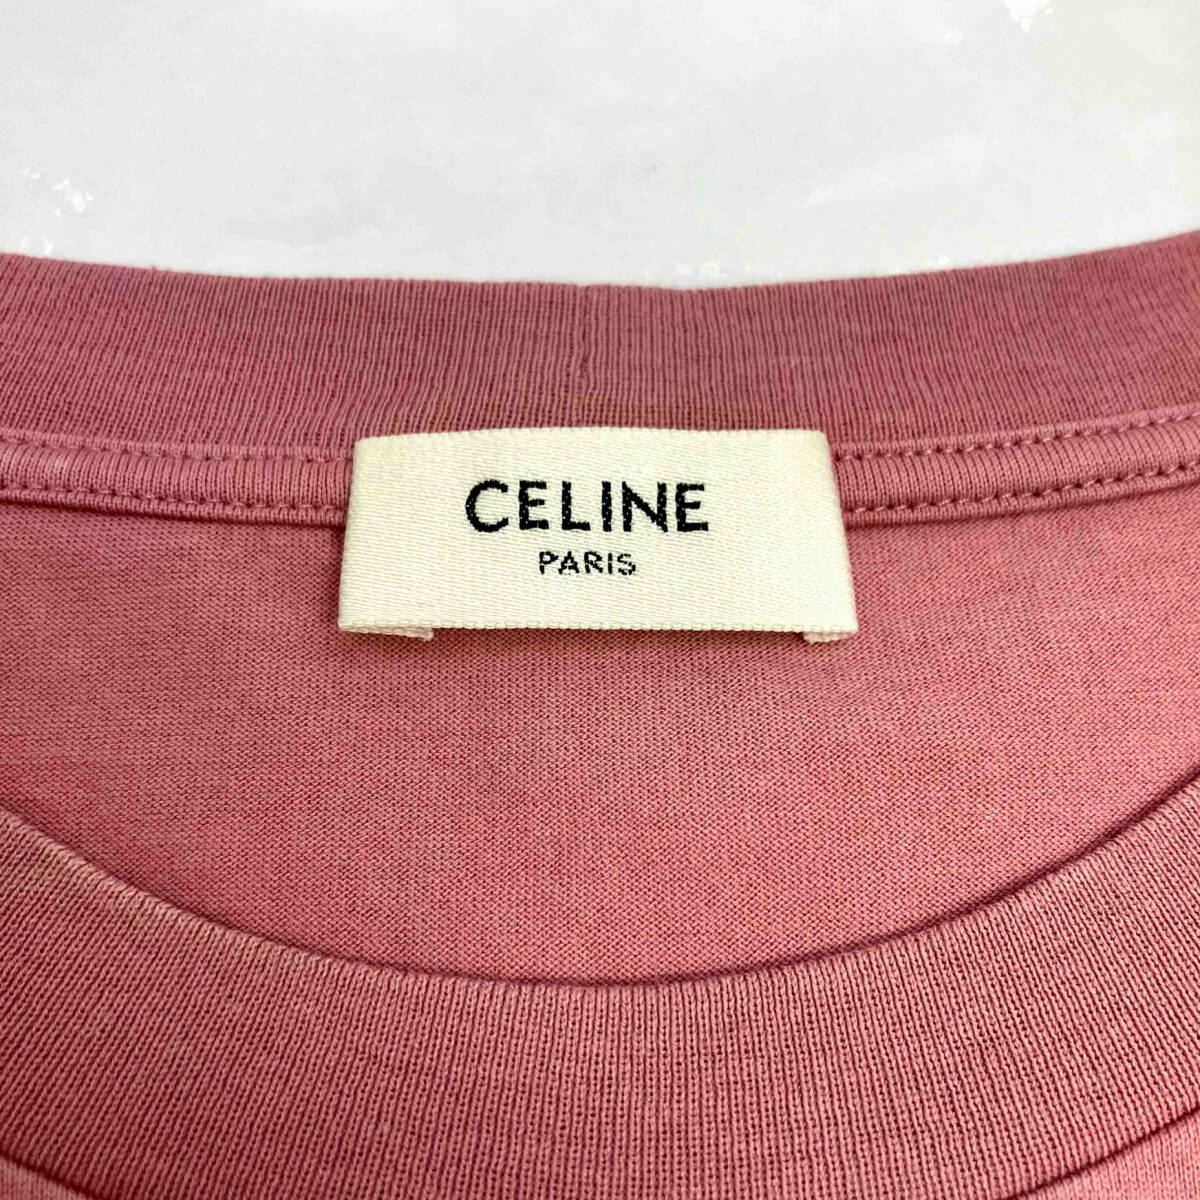 CELINE Celine Voxy футболка хлопок размер S женский 2X885671Q розовый магазин квитанция возможно 